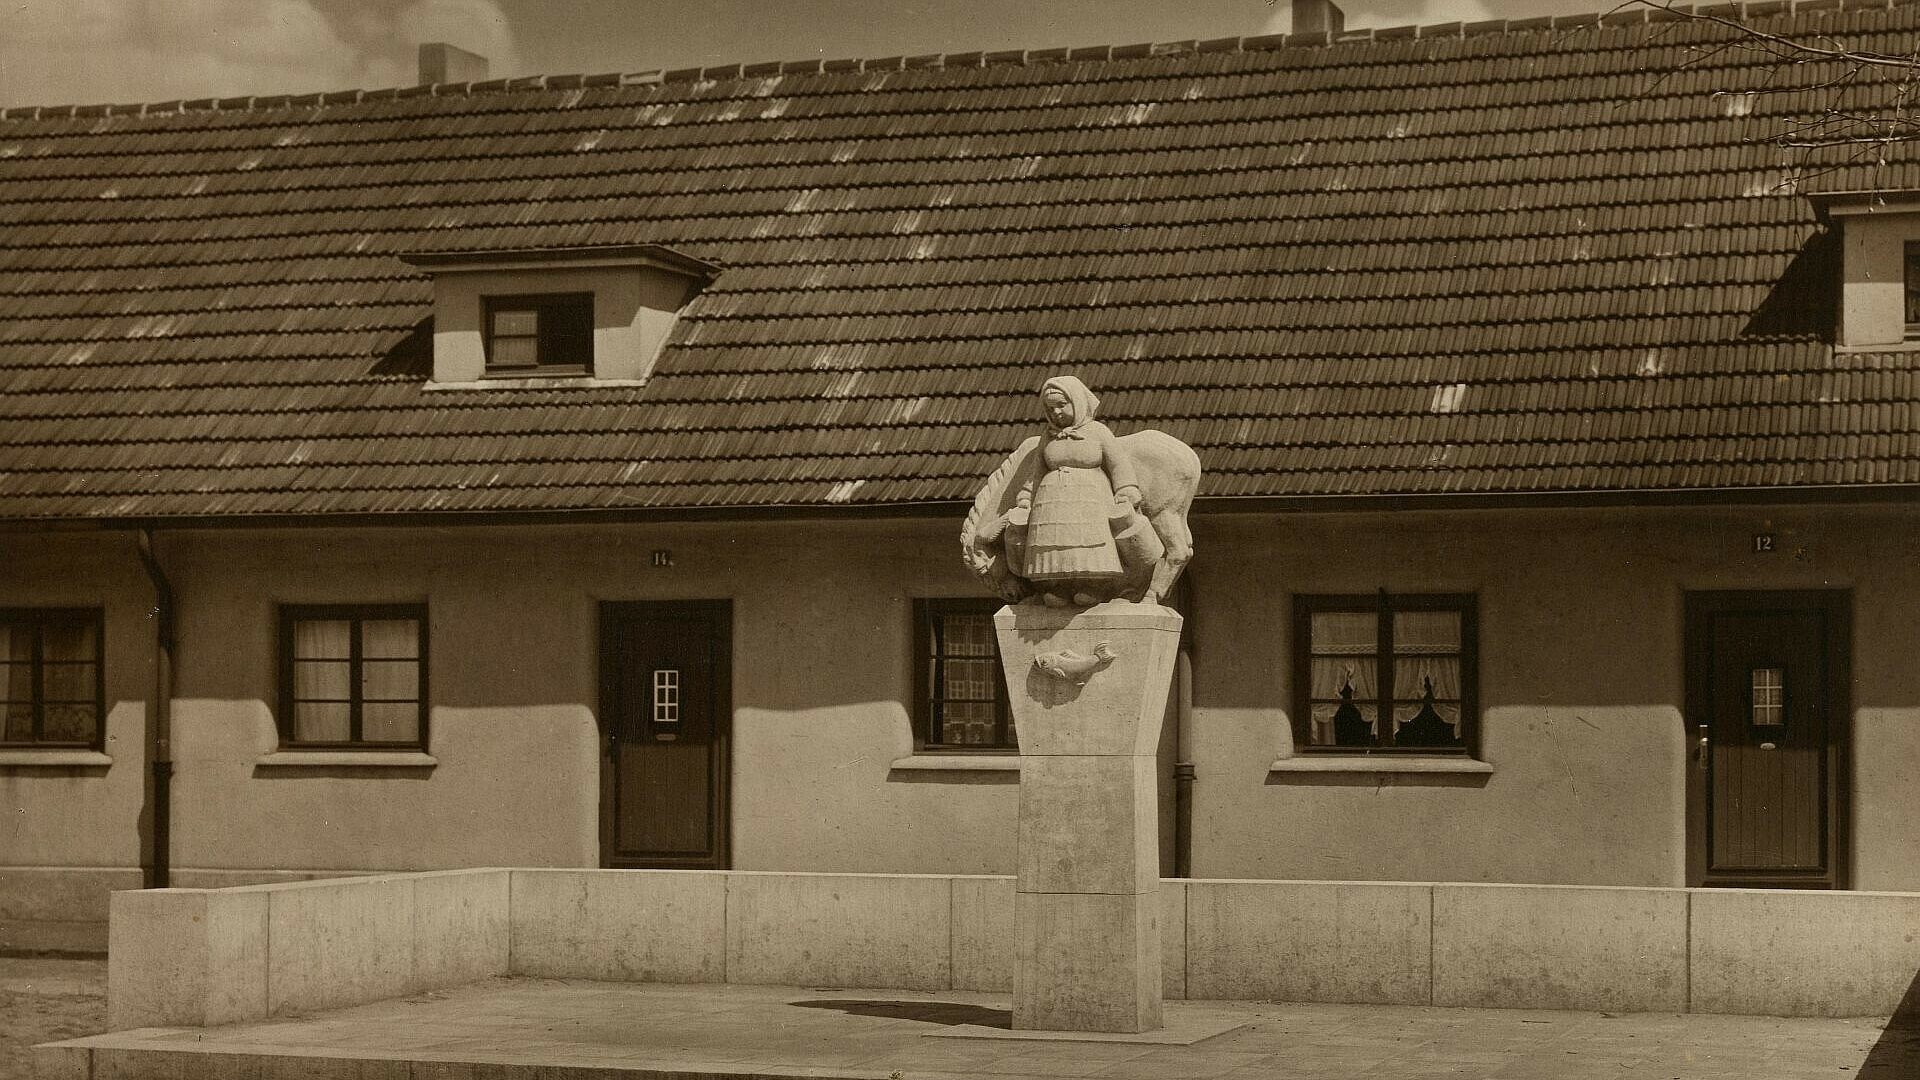 Historisches Bild der Skulptur in der Milchmädchensiedlung in Poll